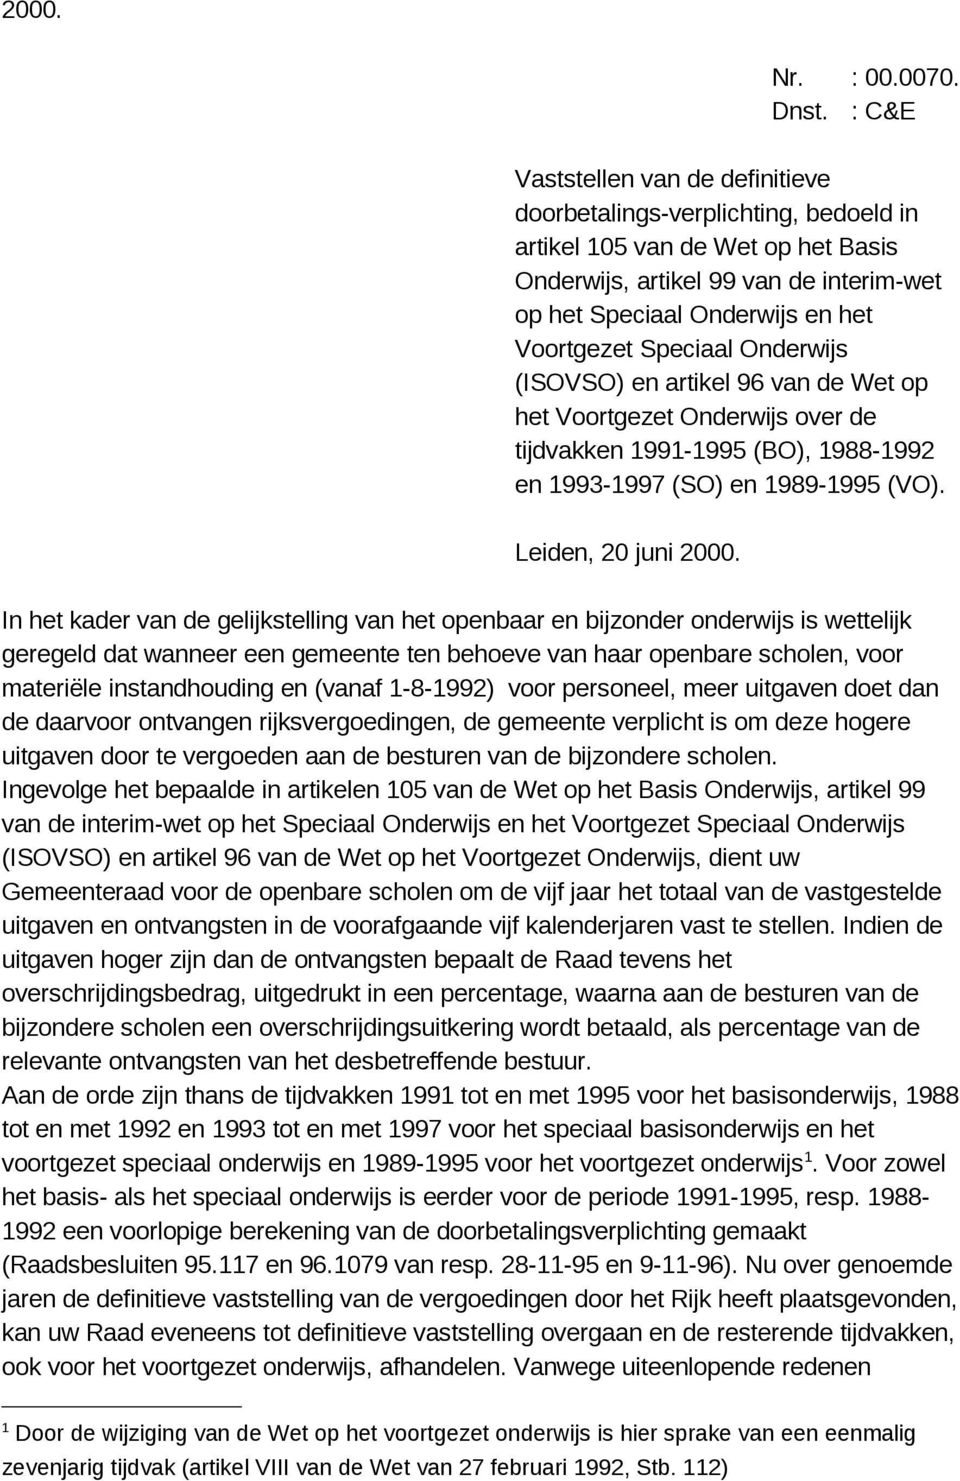 Speciaal Onderwijs (ISOVSO) en artikel 96 van de Wet op het Voortgezet Onderwijs over de tijdvakken 1991-1995 (BO), 1988-1992 en 1993-1997 (SO) en 1989-1995 (VO). Leiden, 20 juni 2000.